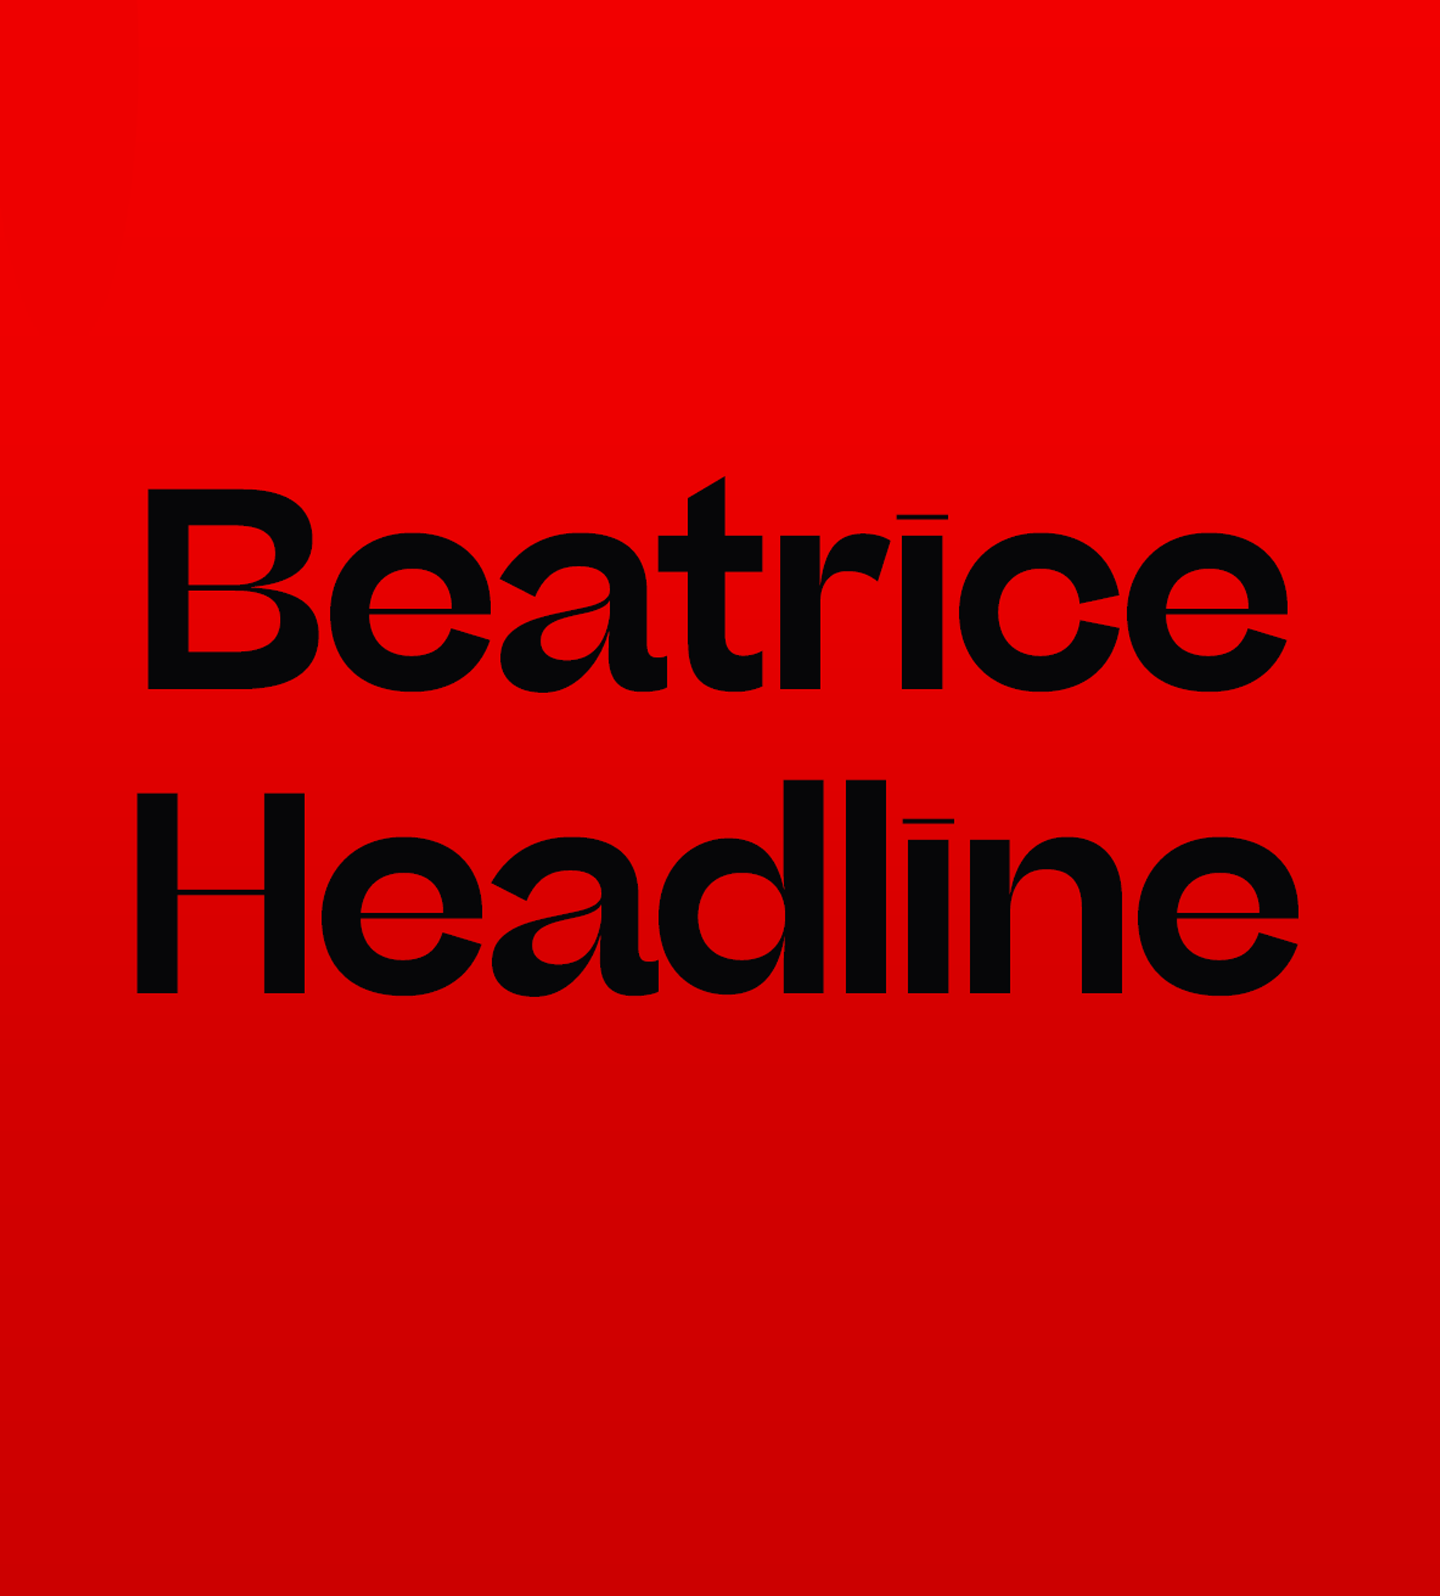 Police Beatrice Headline